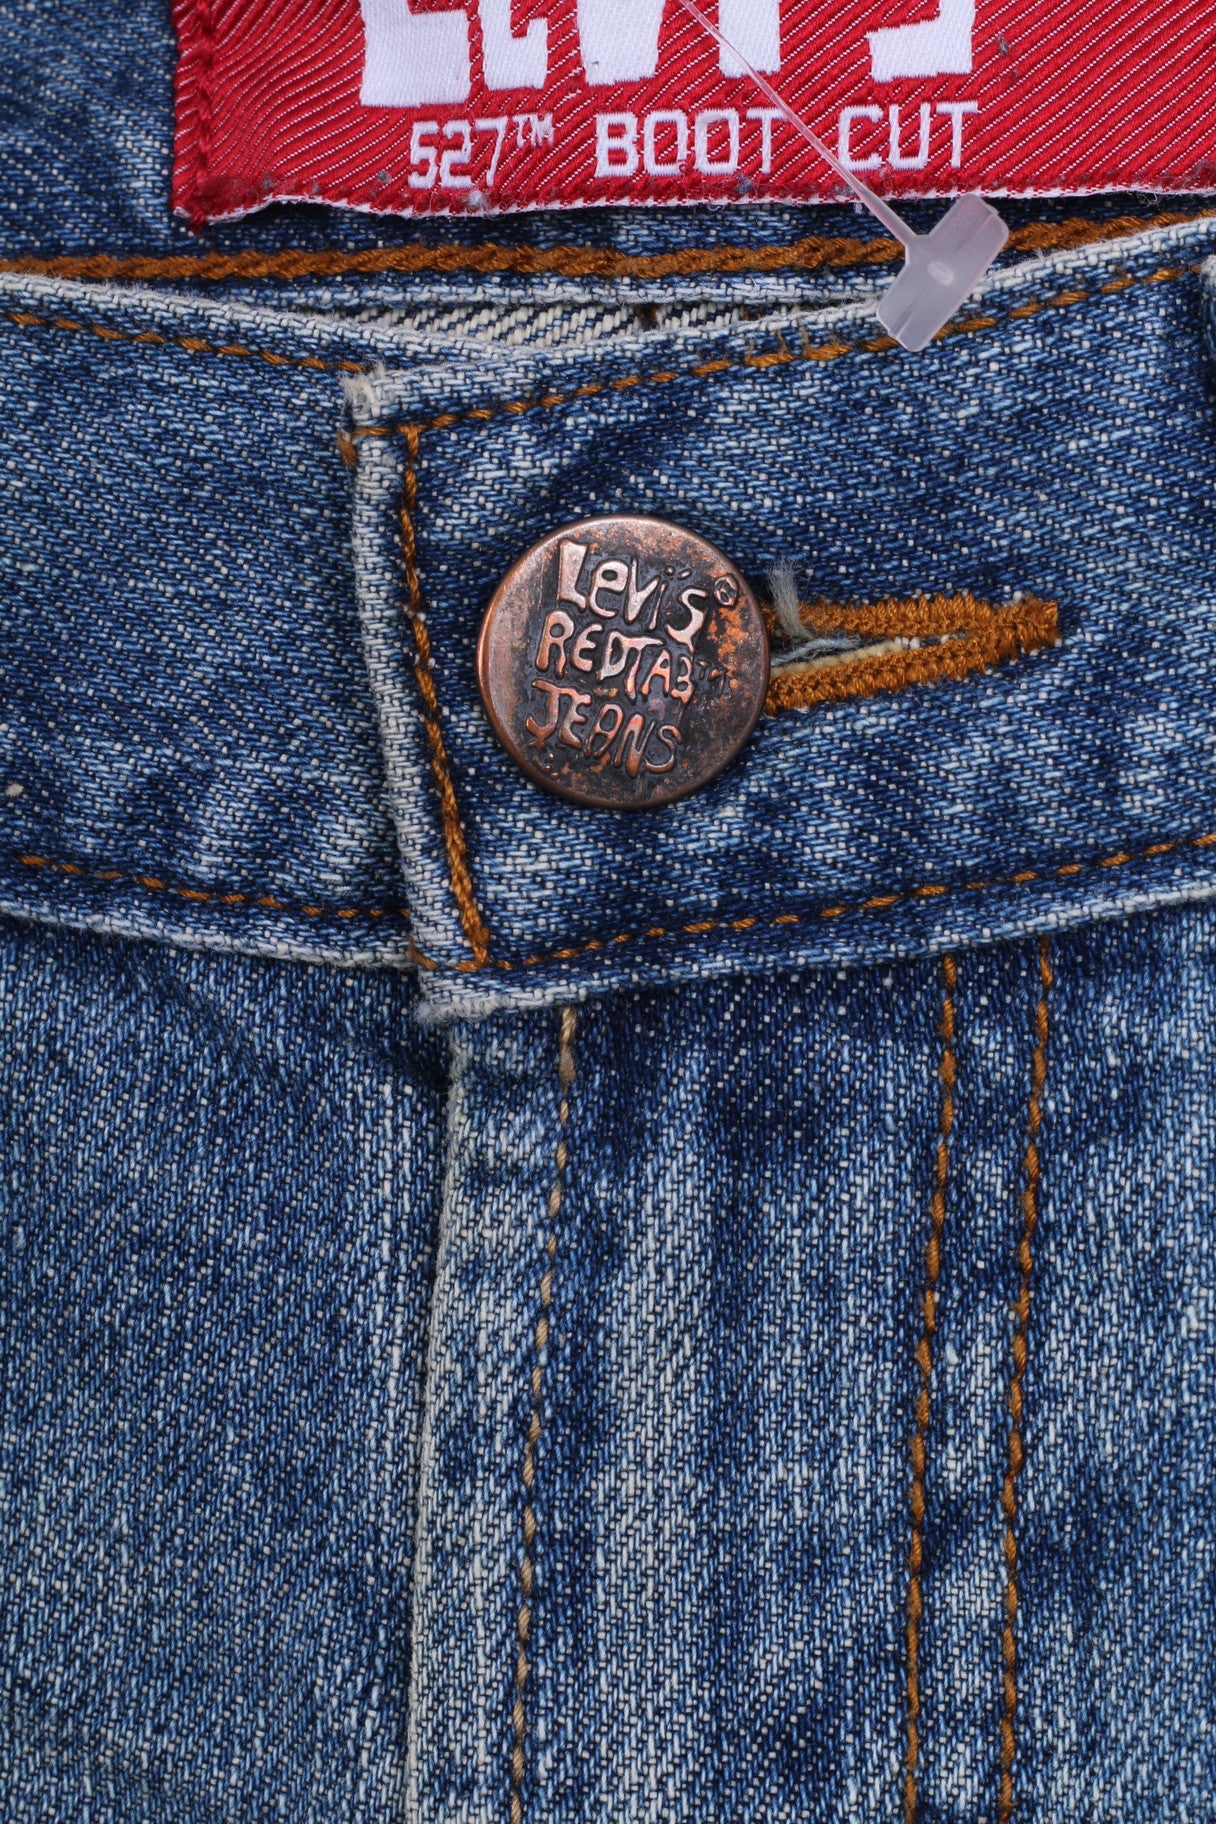 Levis 527 Womens Trousers L26 W26.5 Denim Jeans Cotton Regular Boot Cut - RetrospectClothes